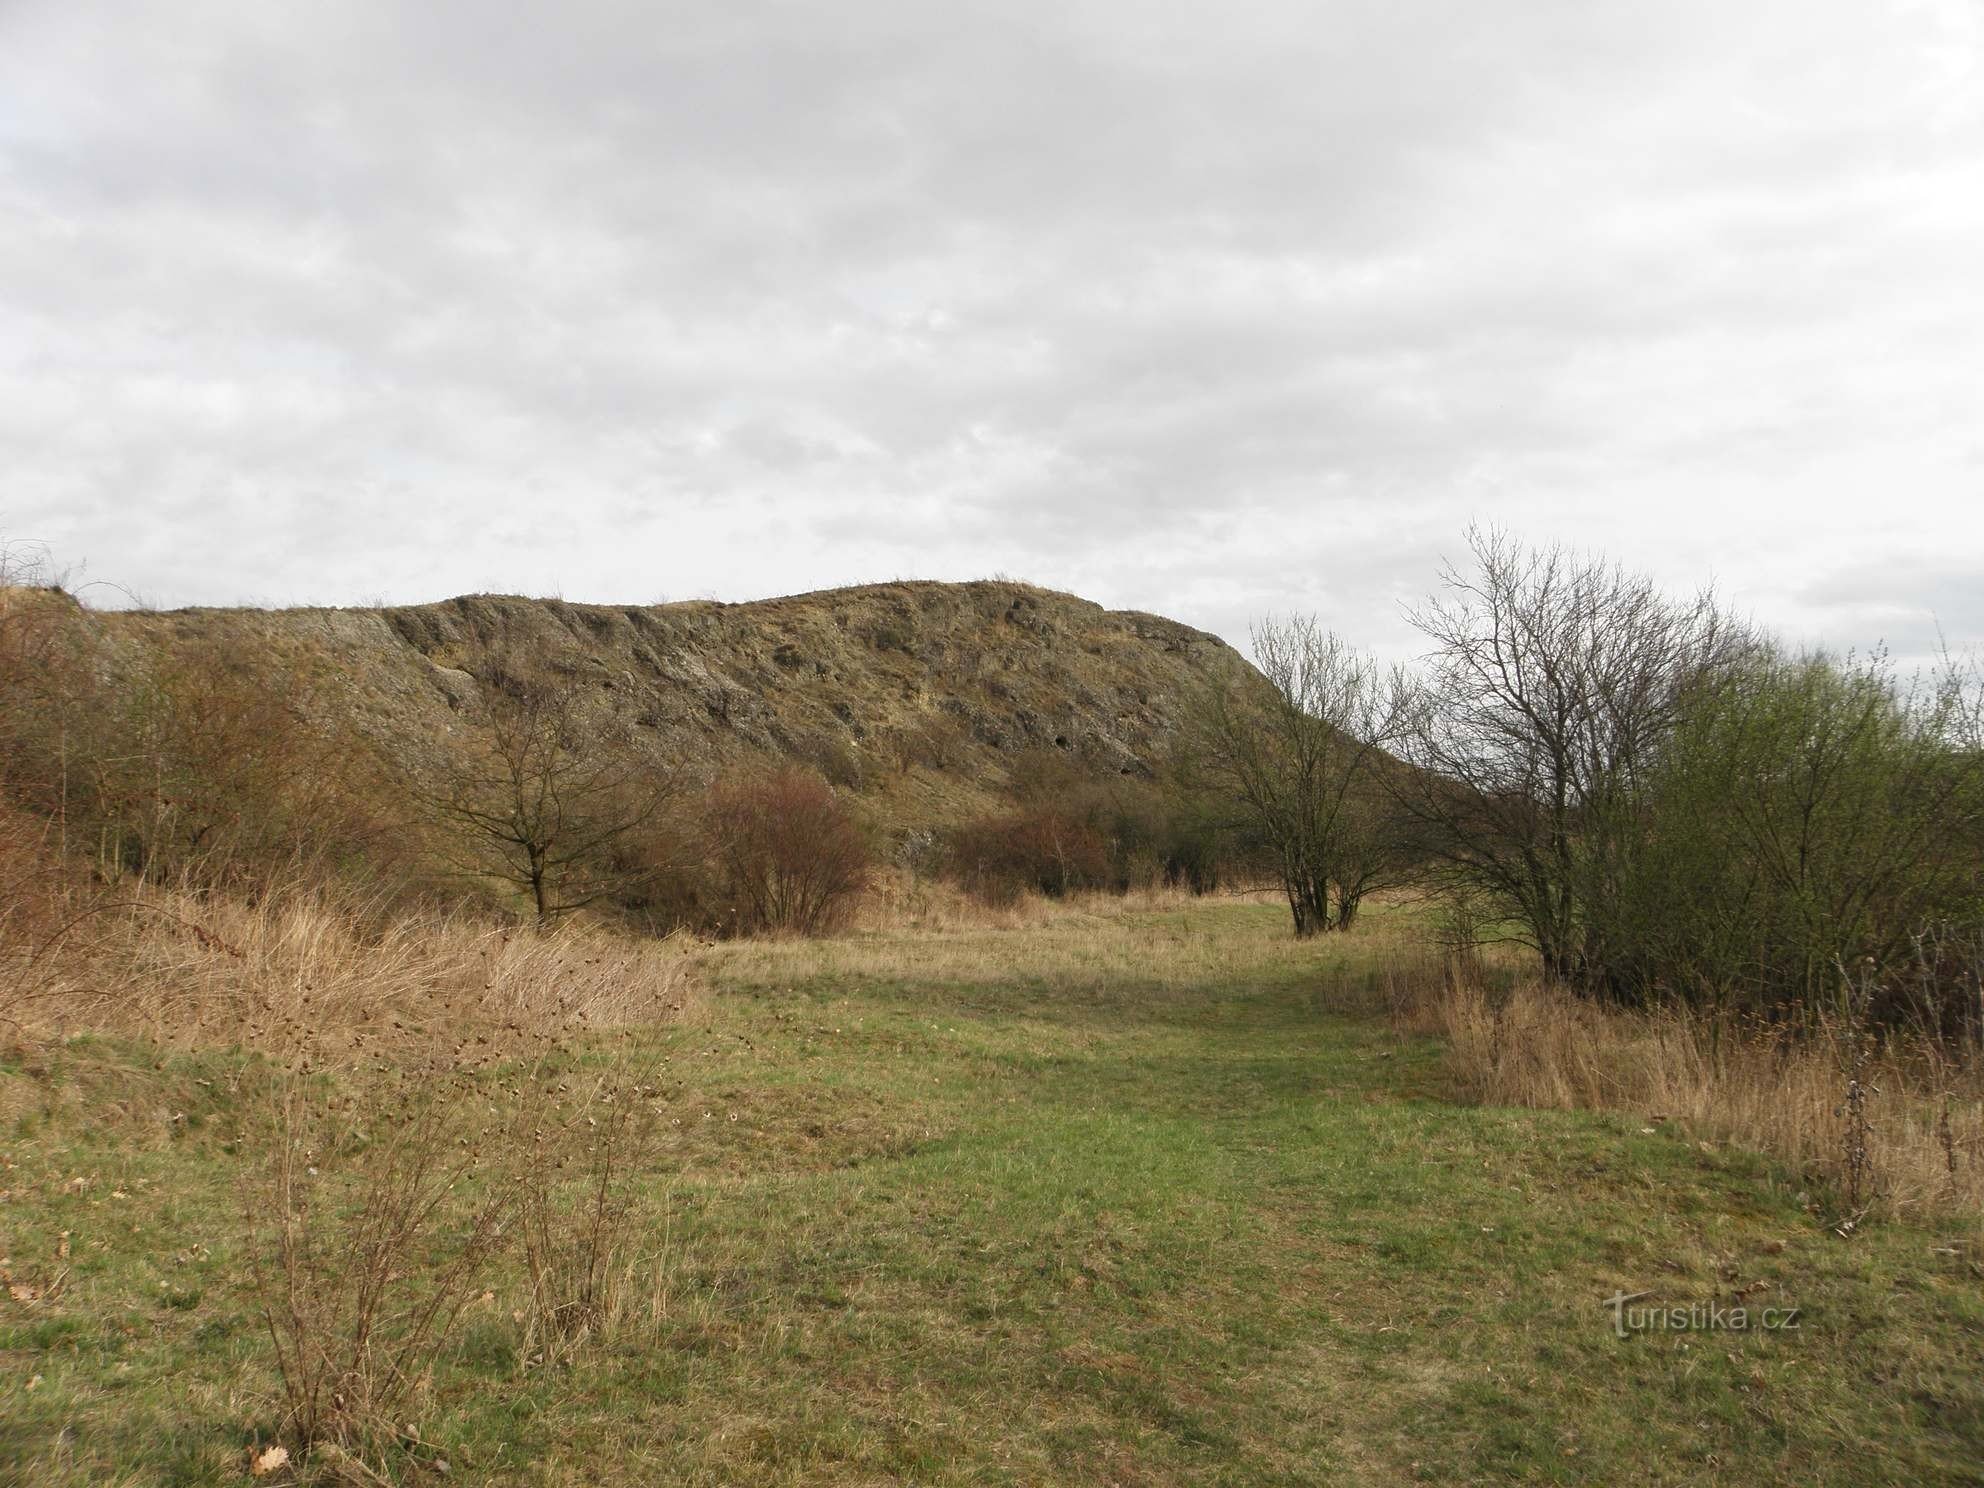 Monumento natural Horka - una plataforma previamente excavada en la colina principal - 2.4.2012 de abril de XNUMX